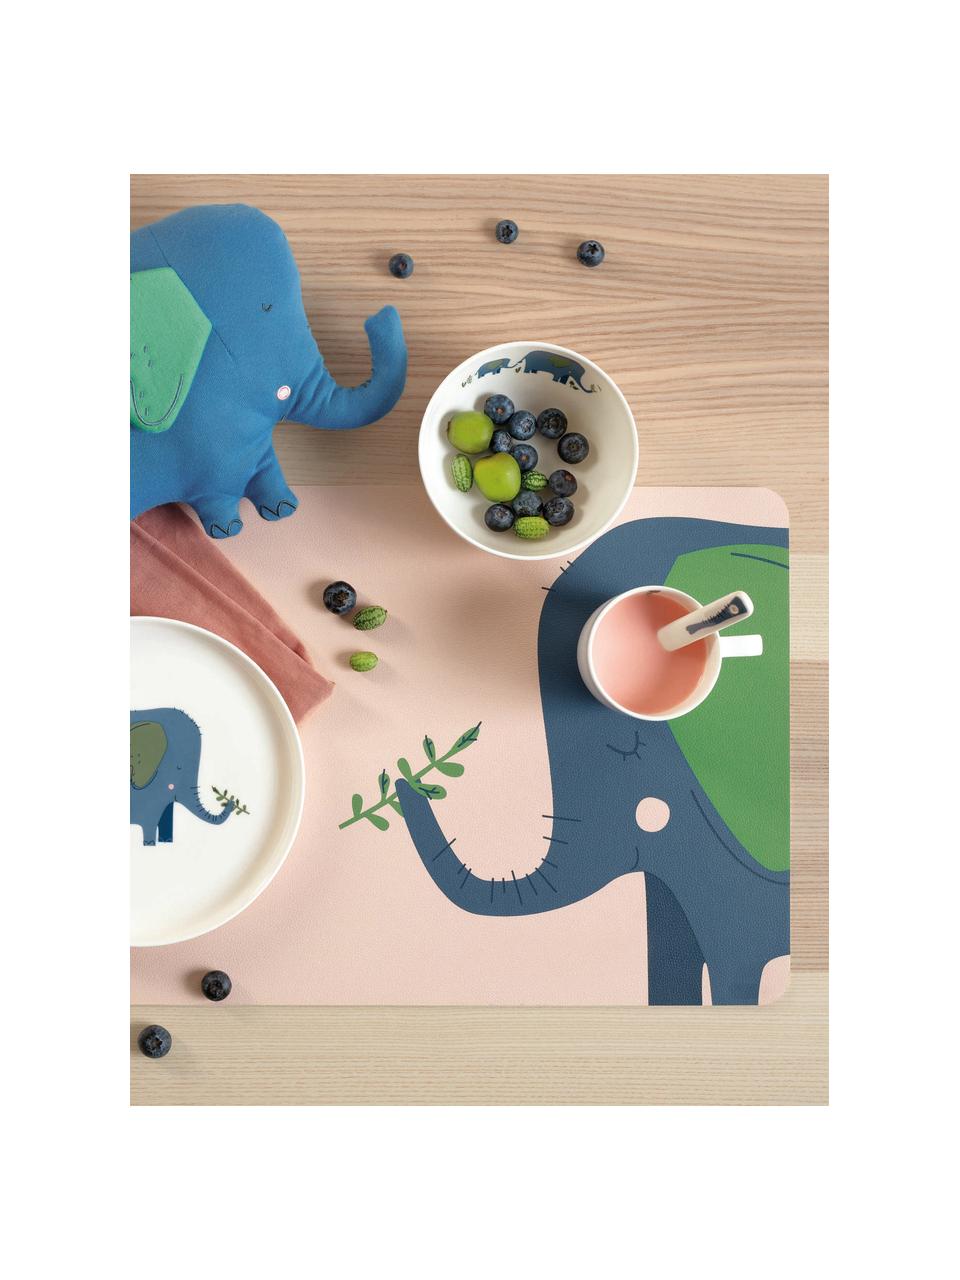 Placemats Leo Emma Elefant, 2 stuks, PVC met leren look, Perzik, donkerblauw, groen, B 33 x L 46 cm